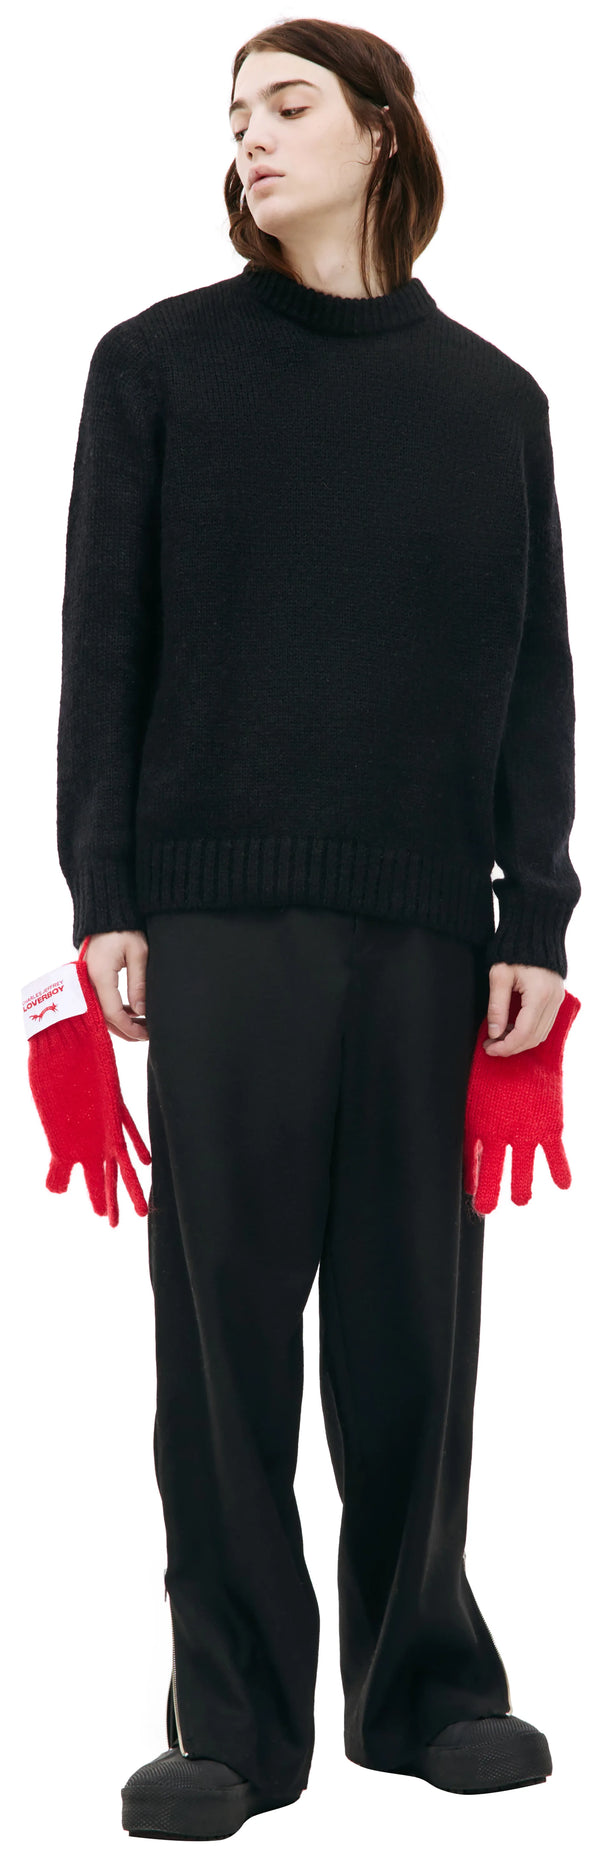 Gloves Mohair Jumper (Black/Red)